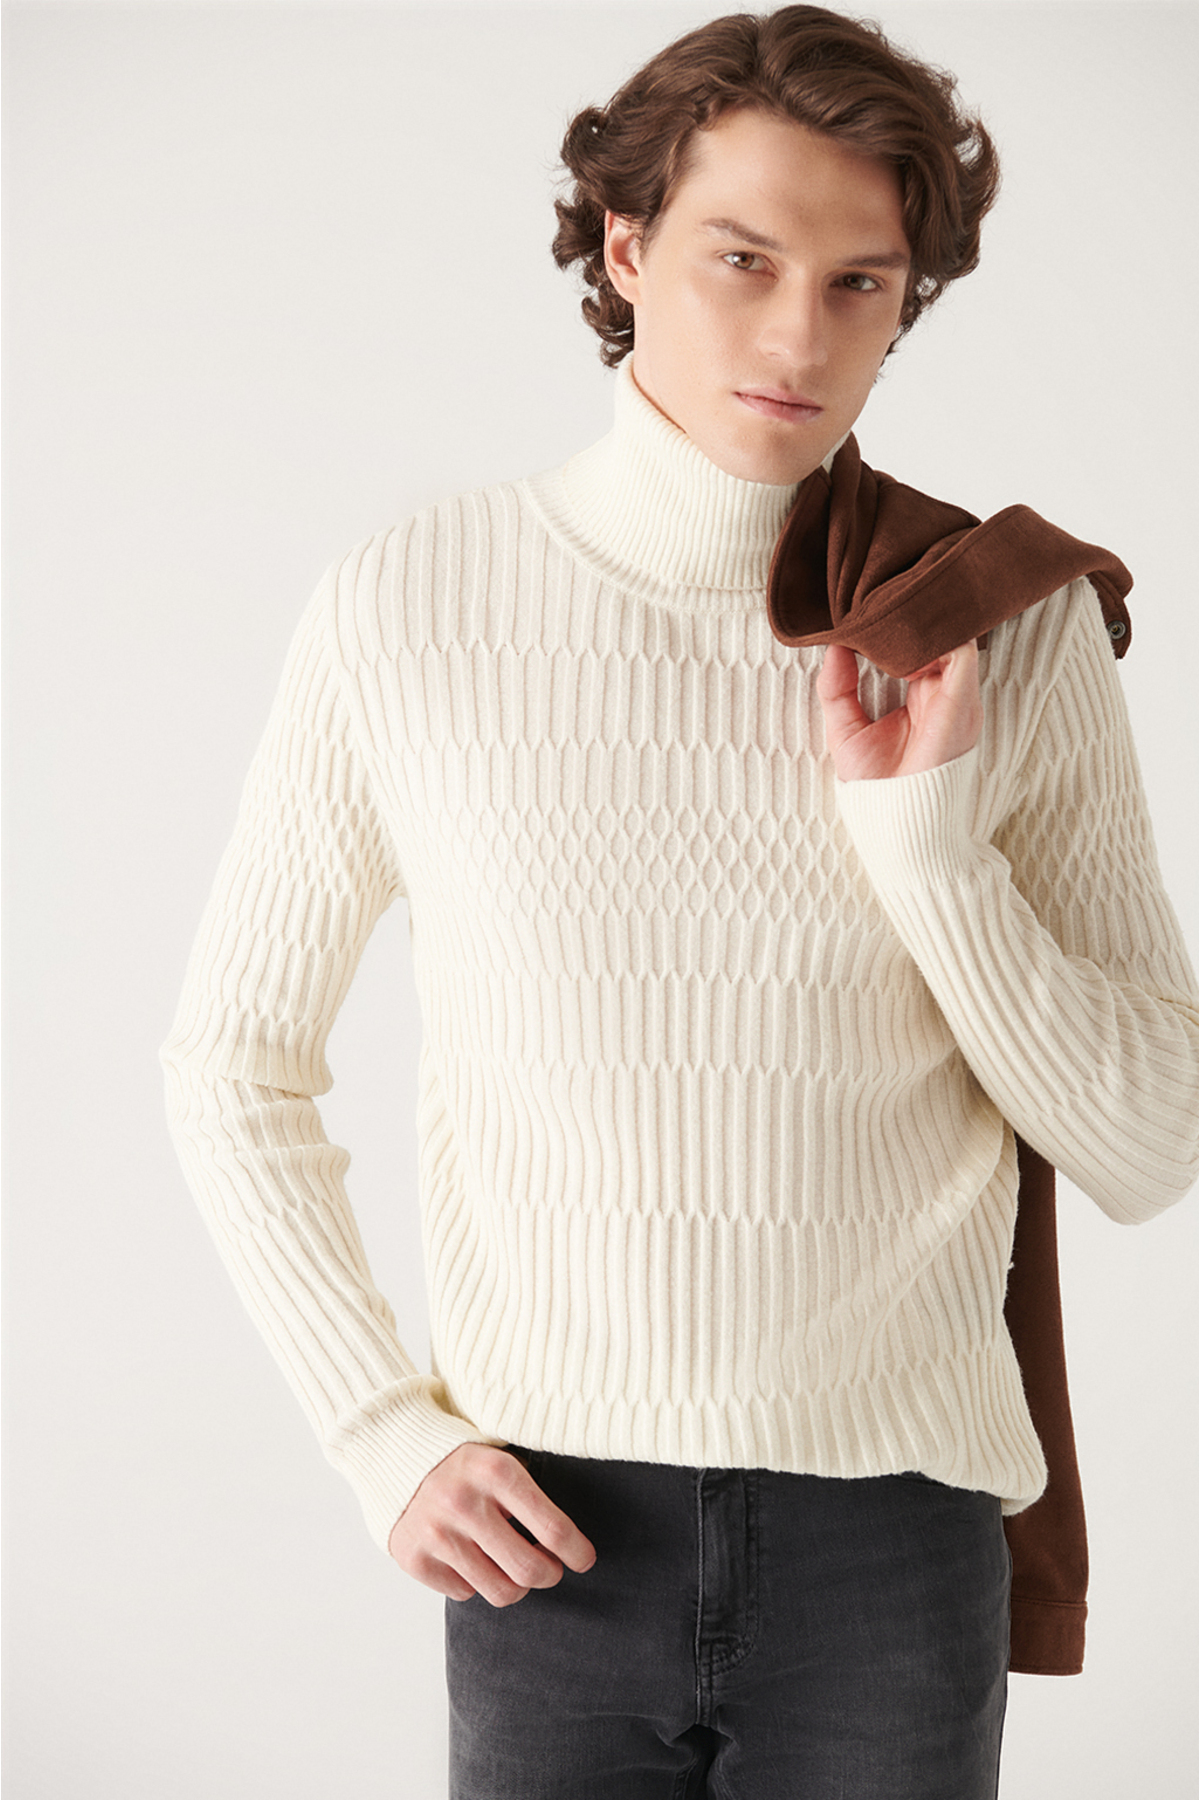 Avva Men's Ecru Full Turtleneck Knit Detailed Cotton Slim Fit Slim Fit Knitwear Sweater